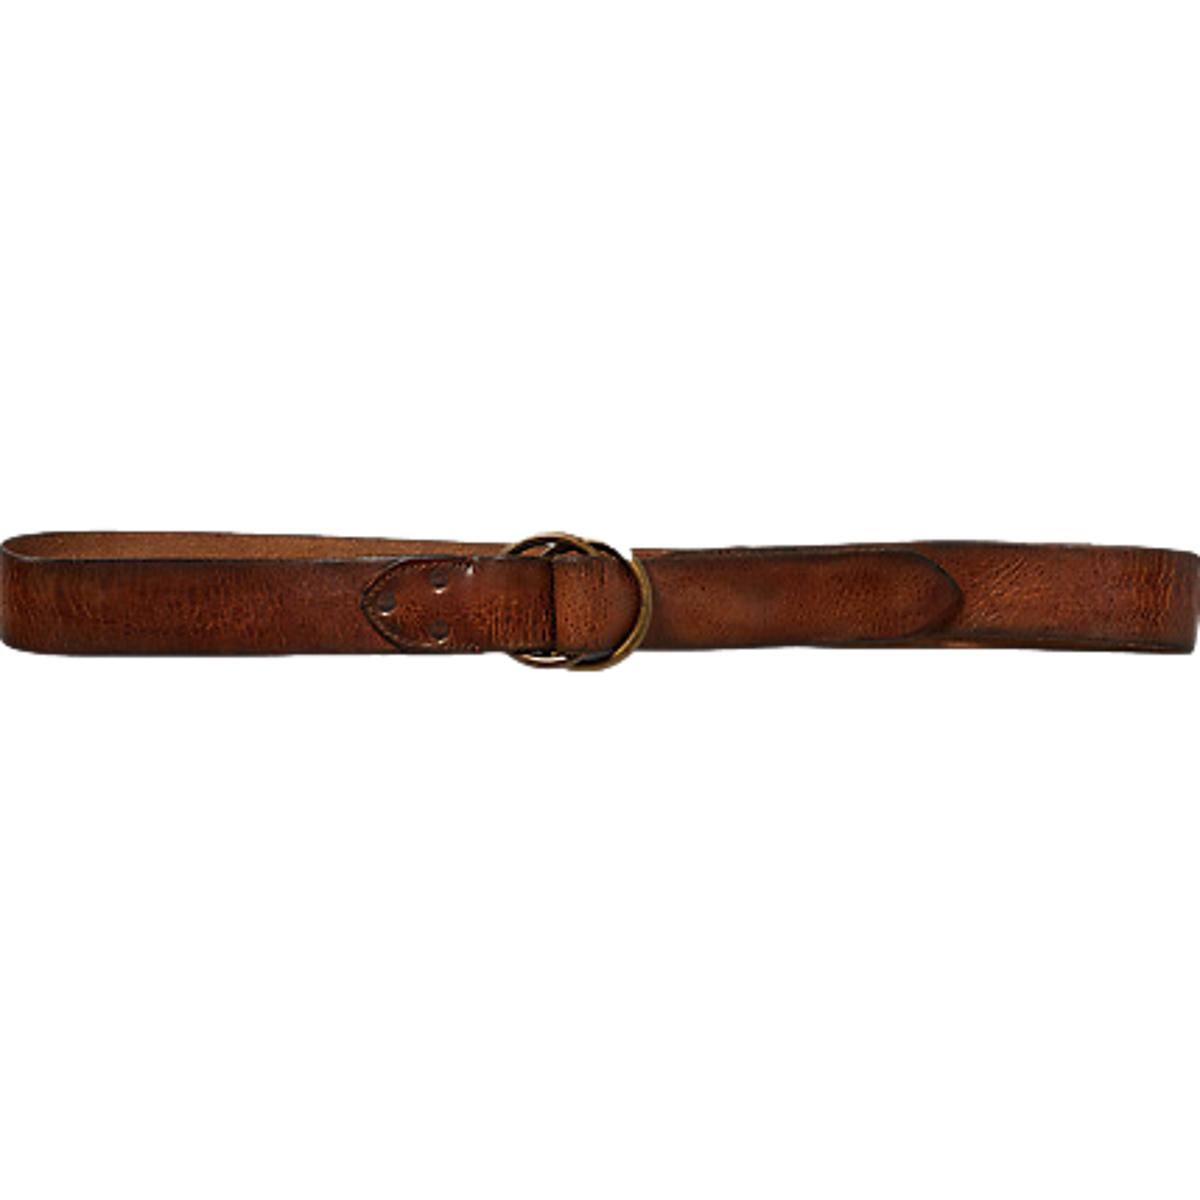 Distressed Leather Belt Vintage Brown - Belts